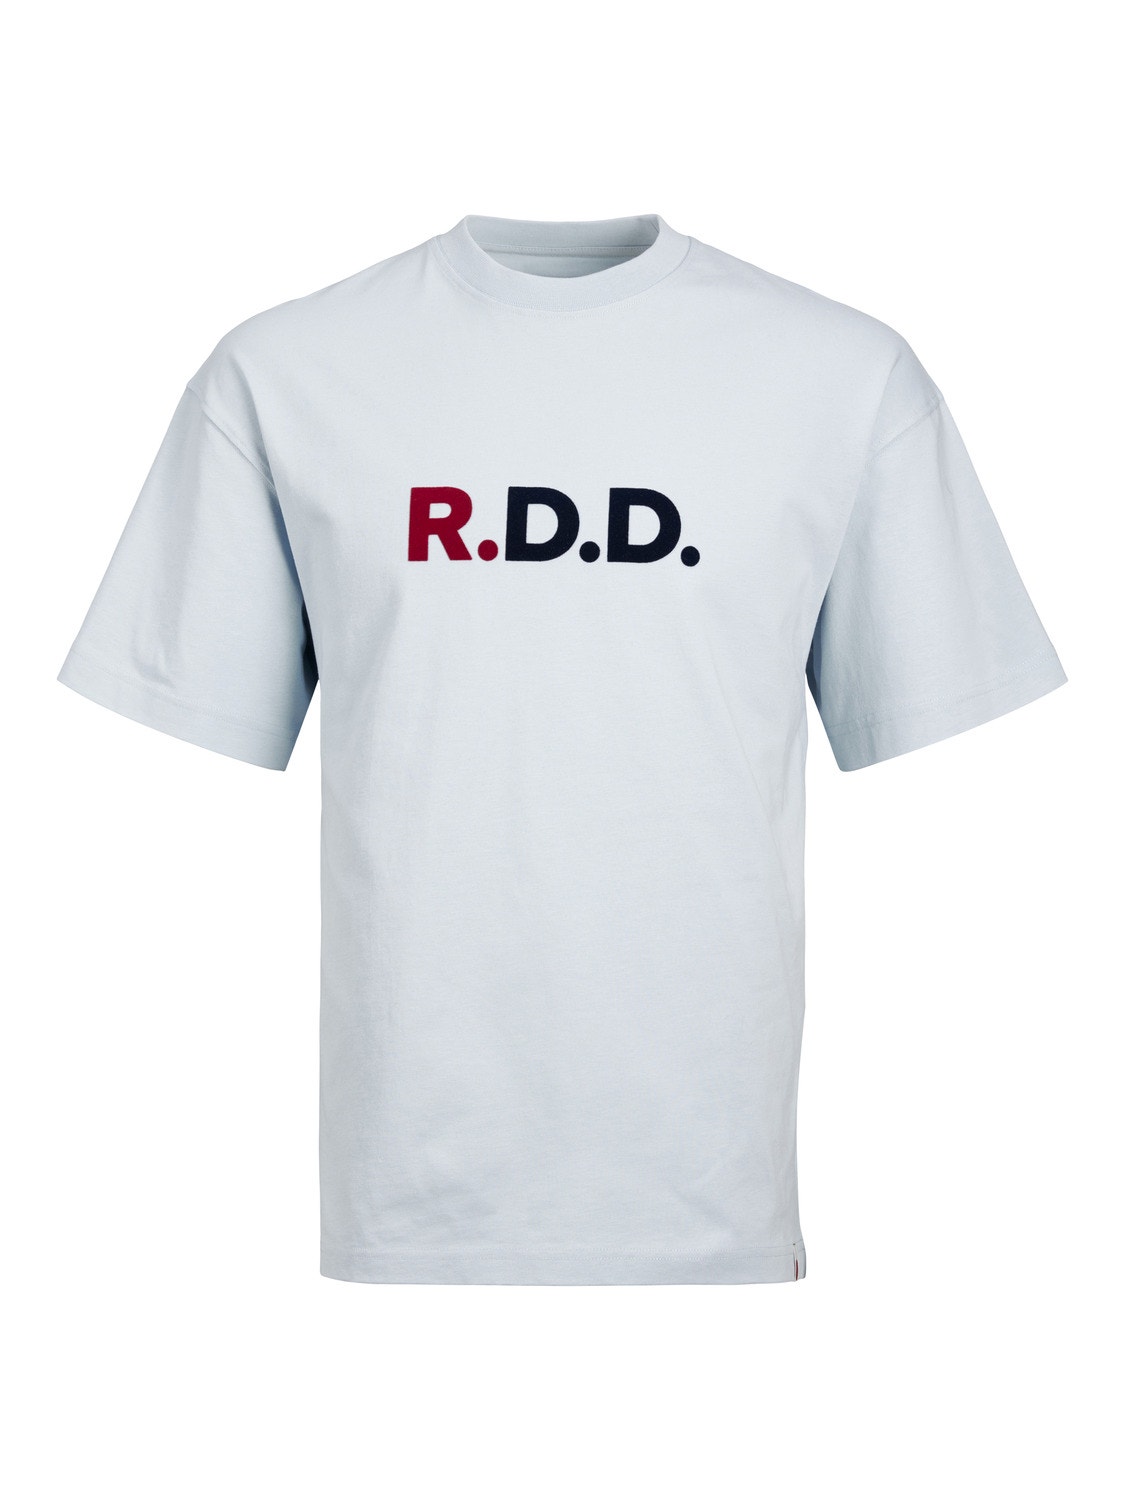 Jack & Jones RDD Z logo Okrągły dekolt T-shirt -Dream Blue - 12218239